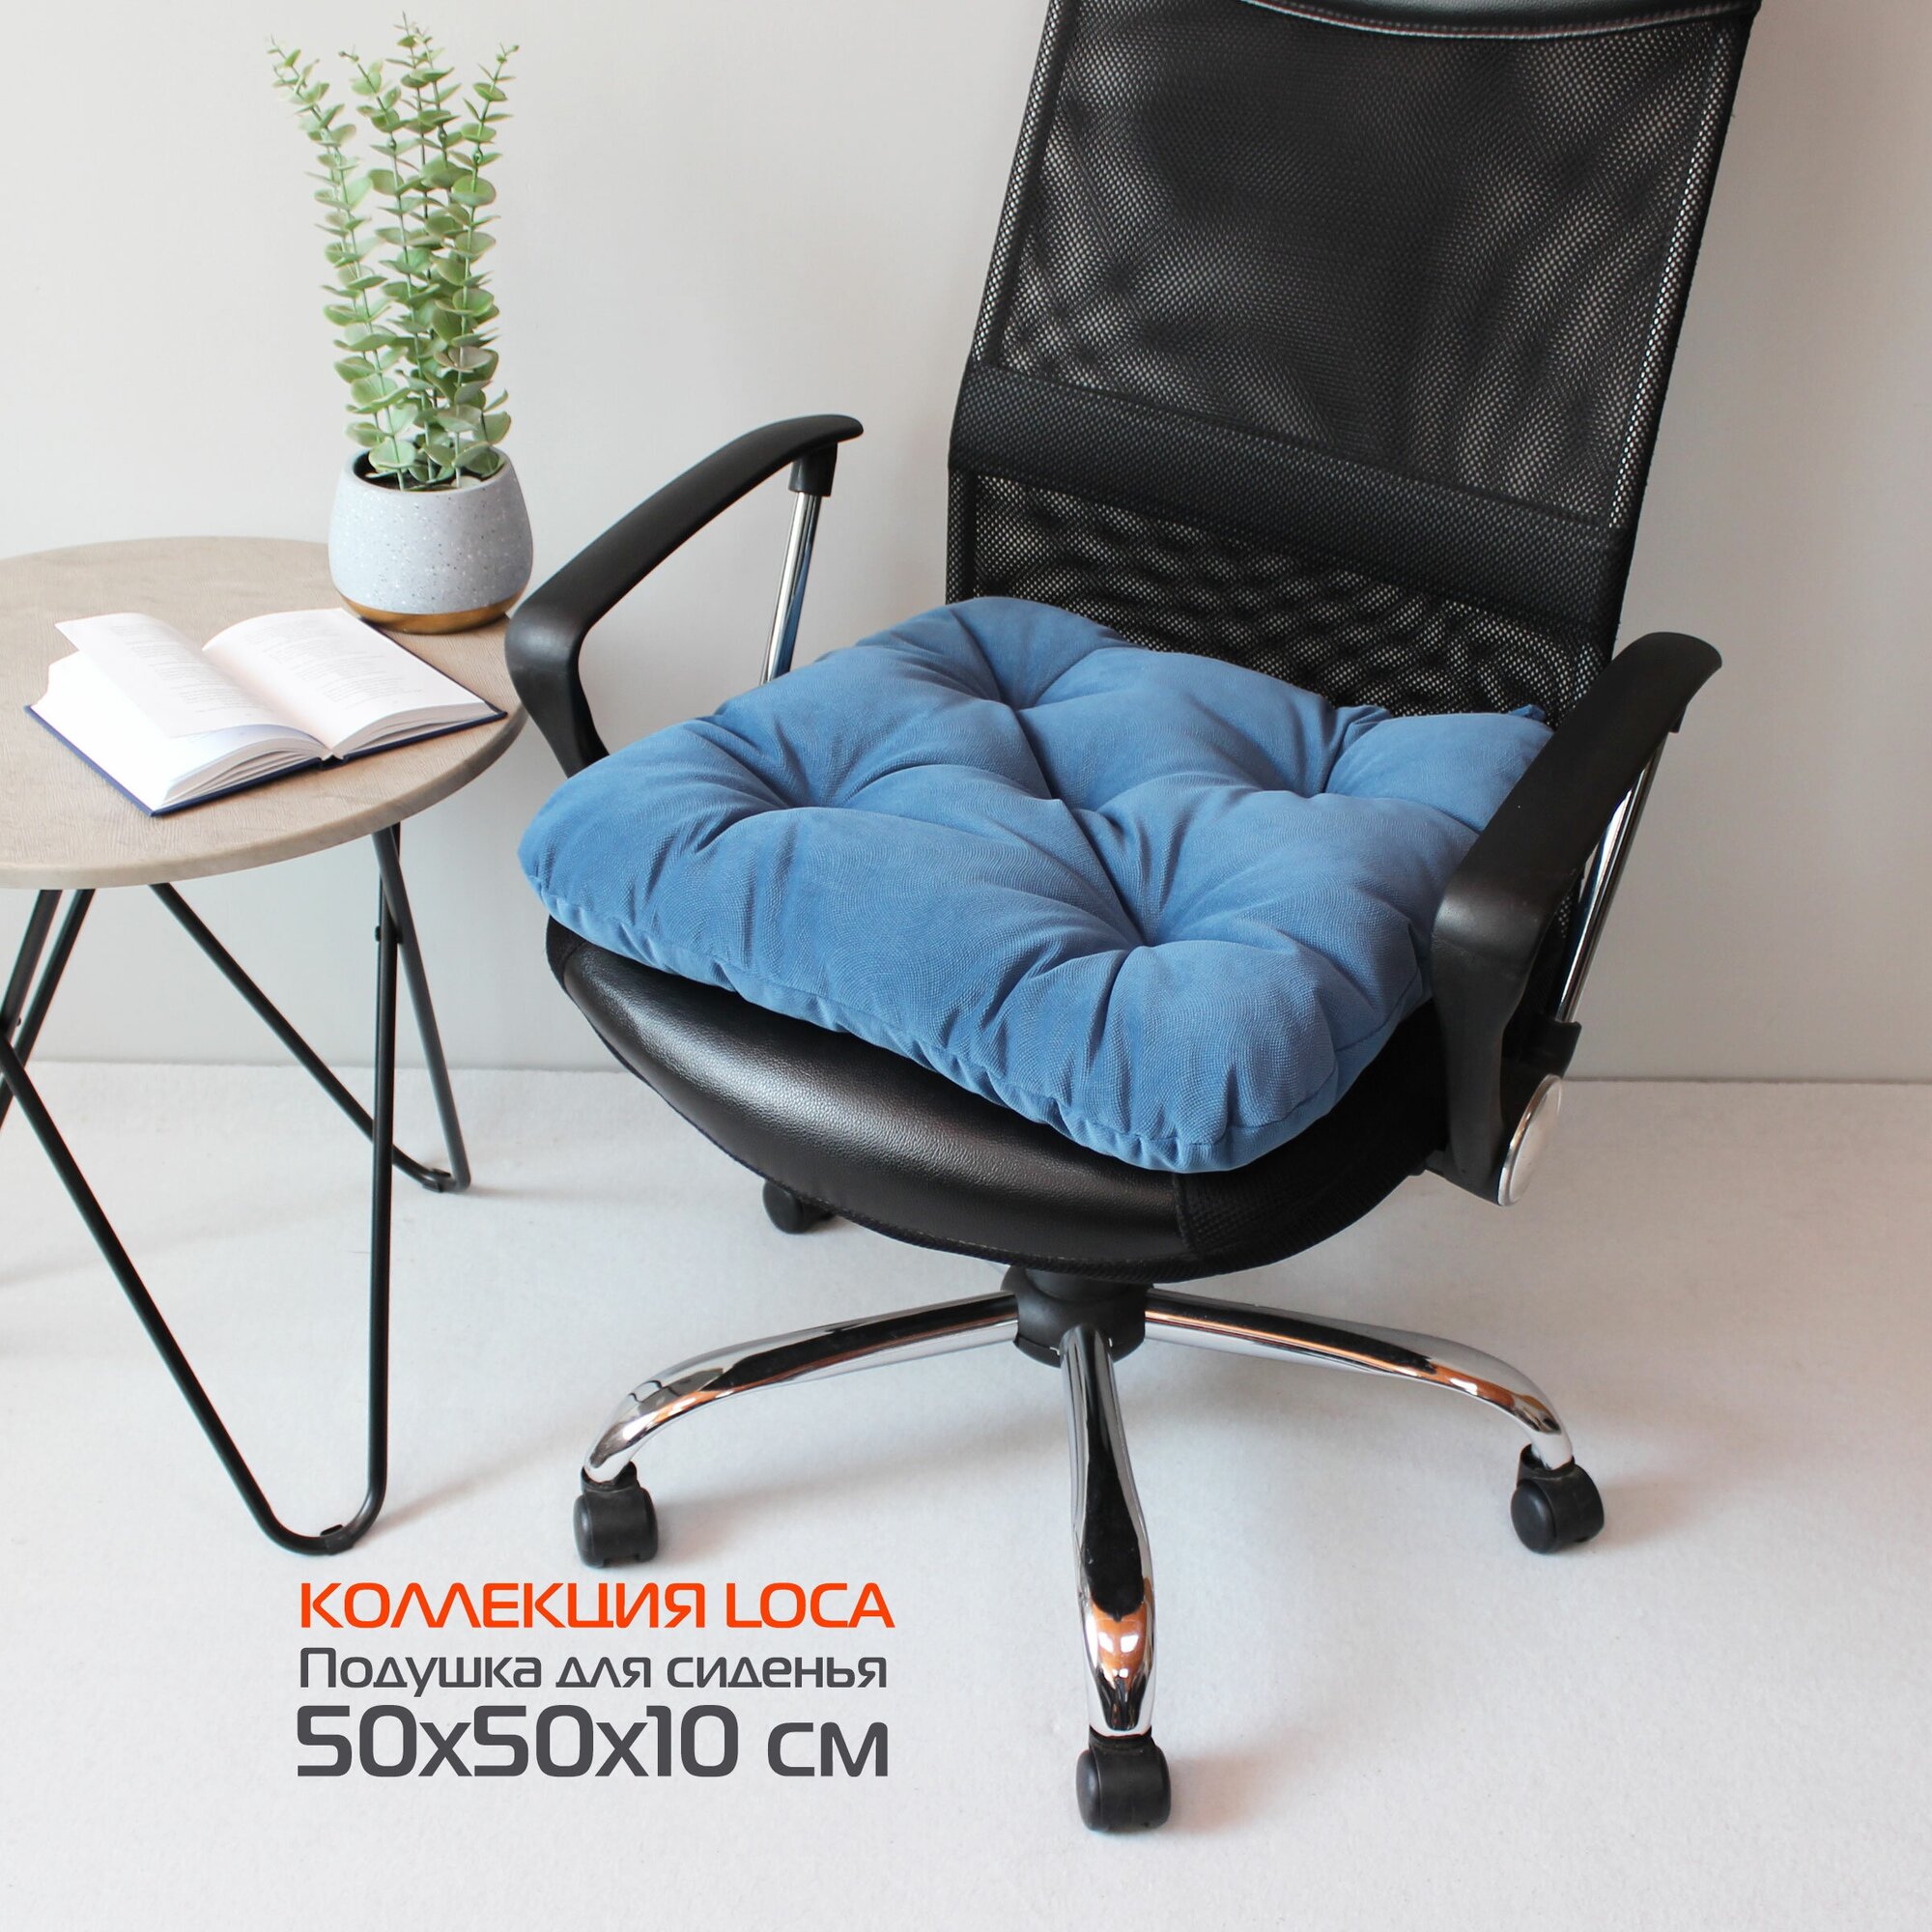 Подушка для сиденья матех LOCA 50*50*10. Цвет синий, арт. 61-816